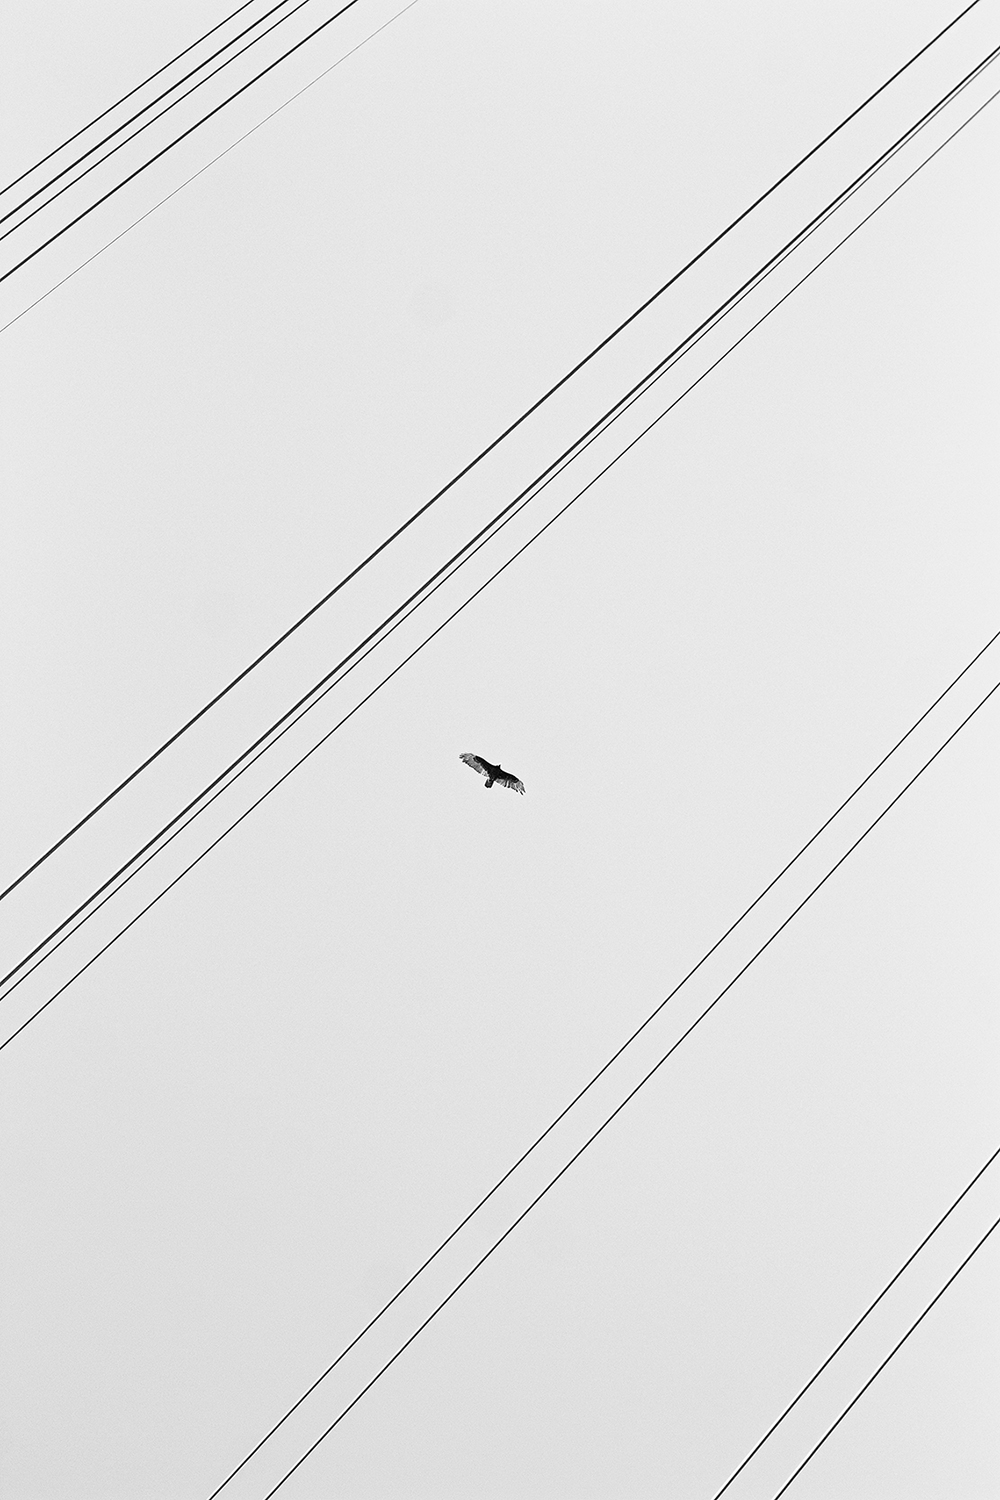 Kite flying high